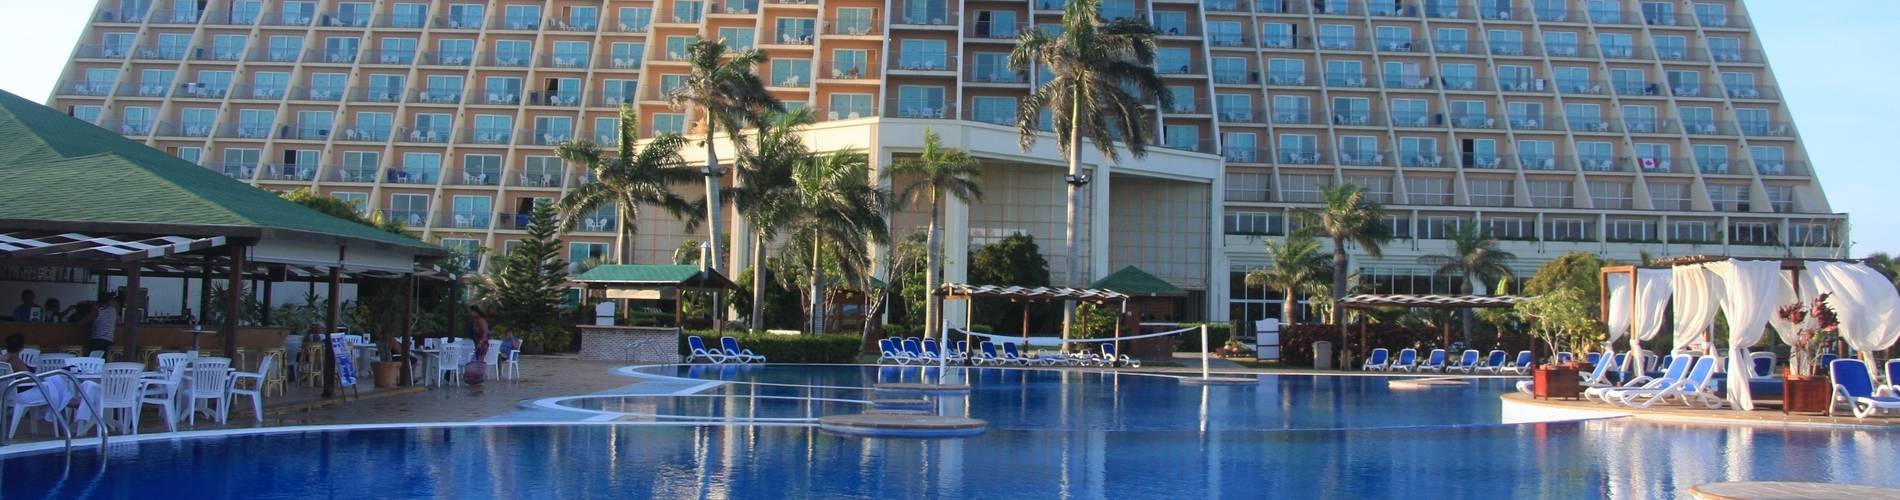 Blau Varadero Hotel - Cuba - 